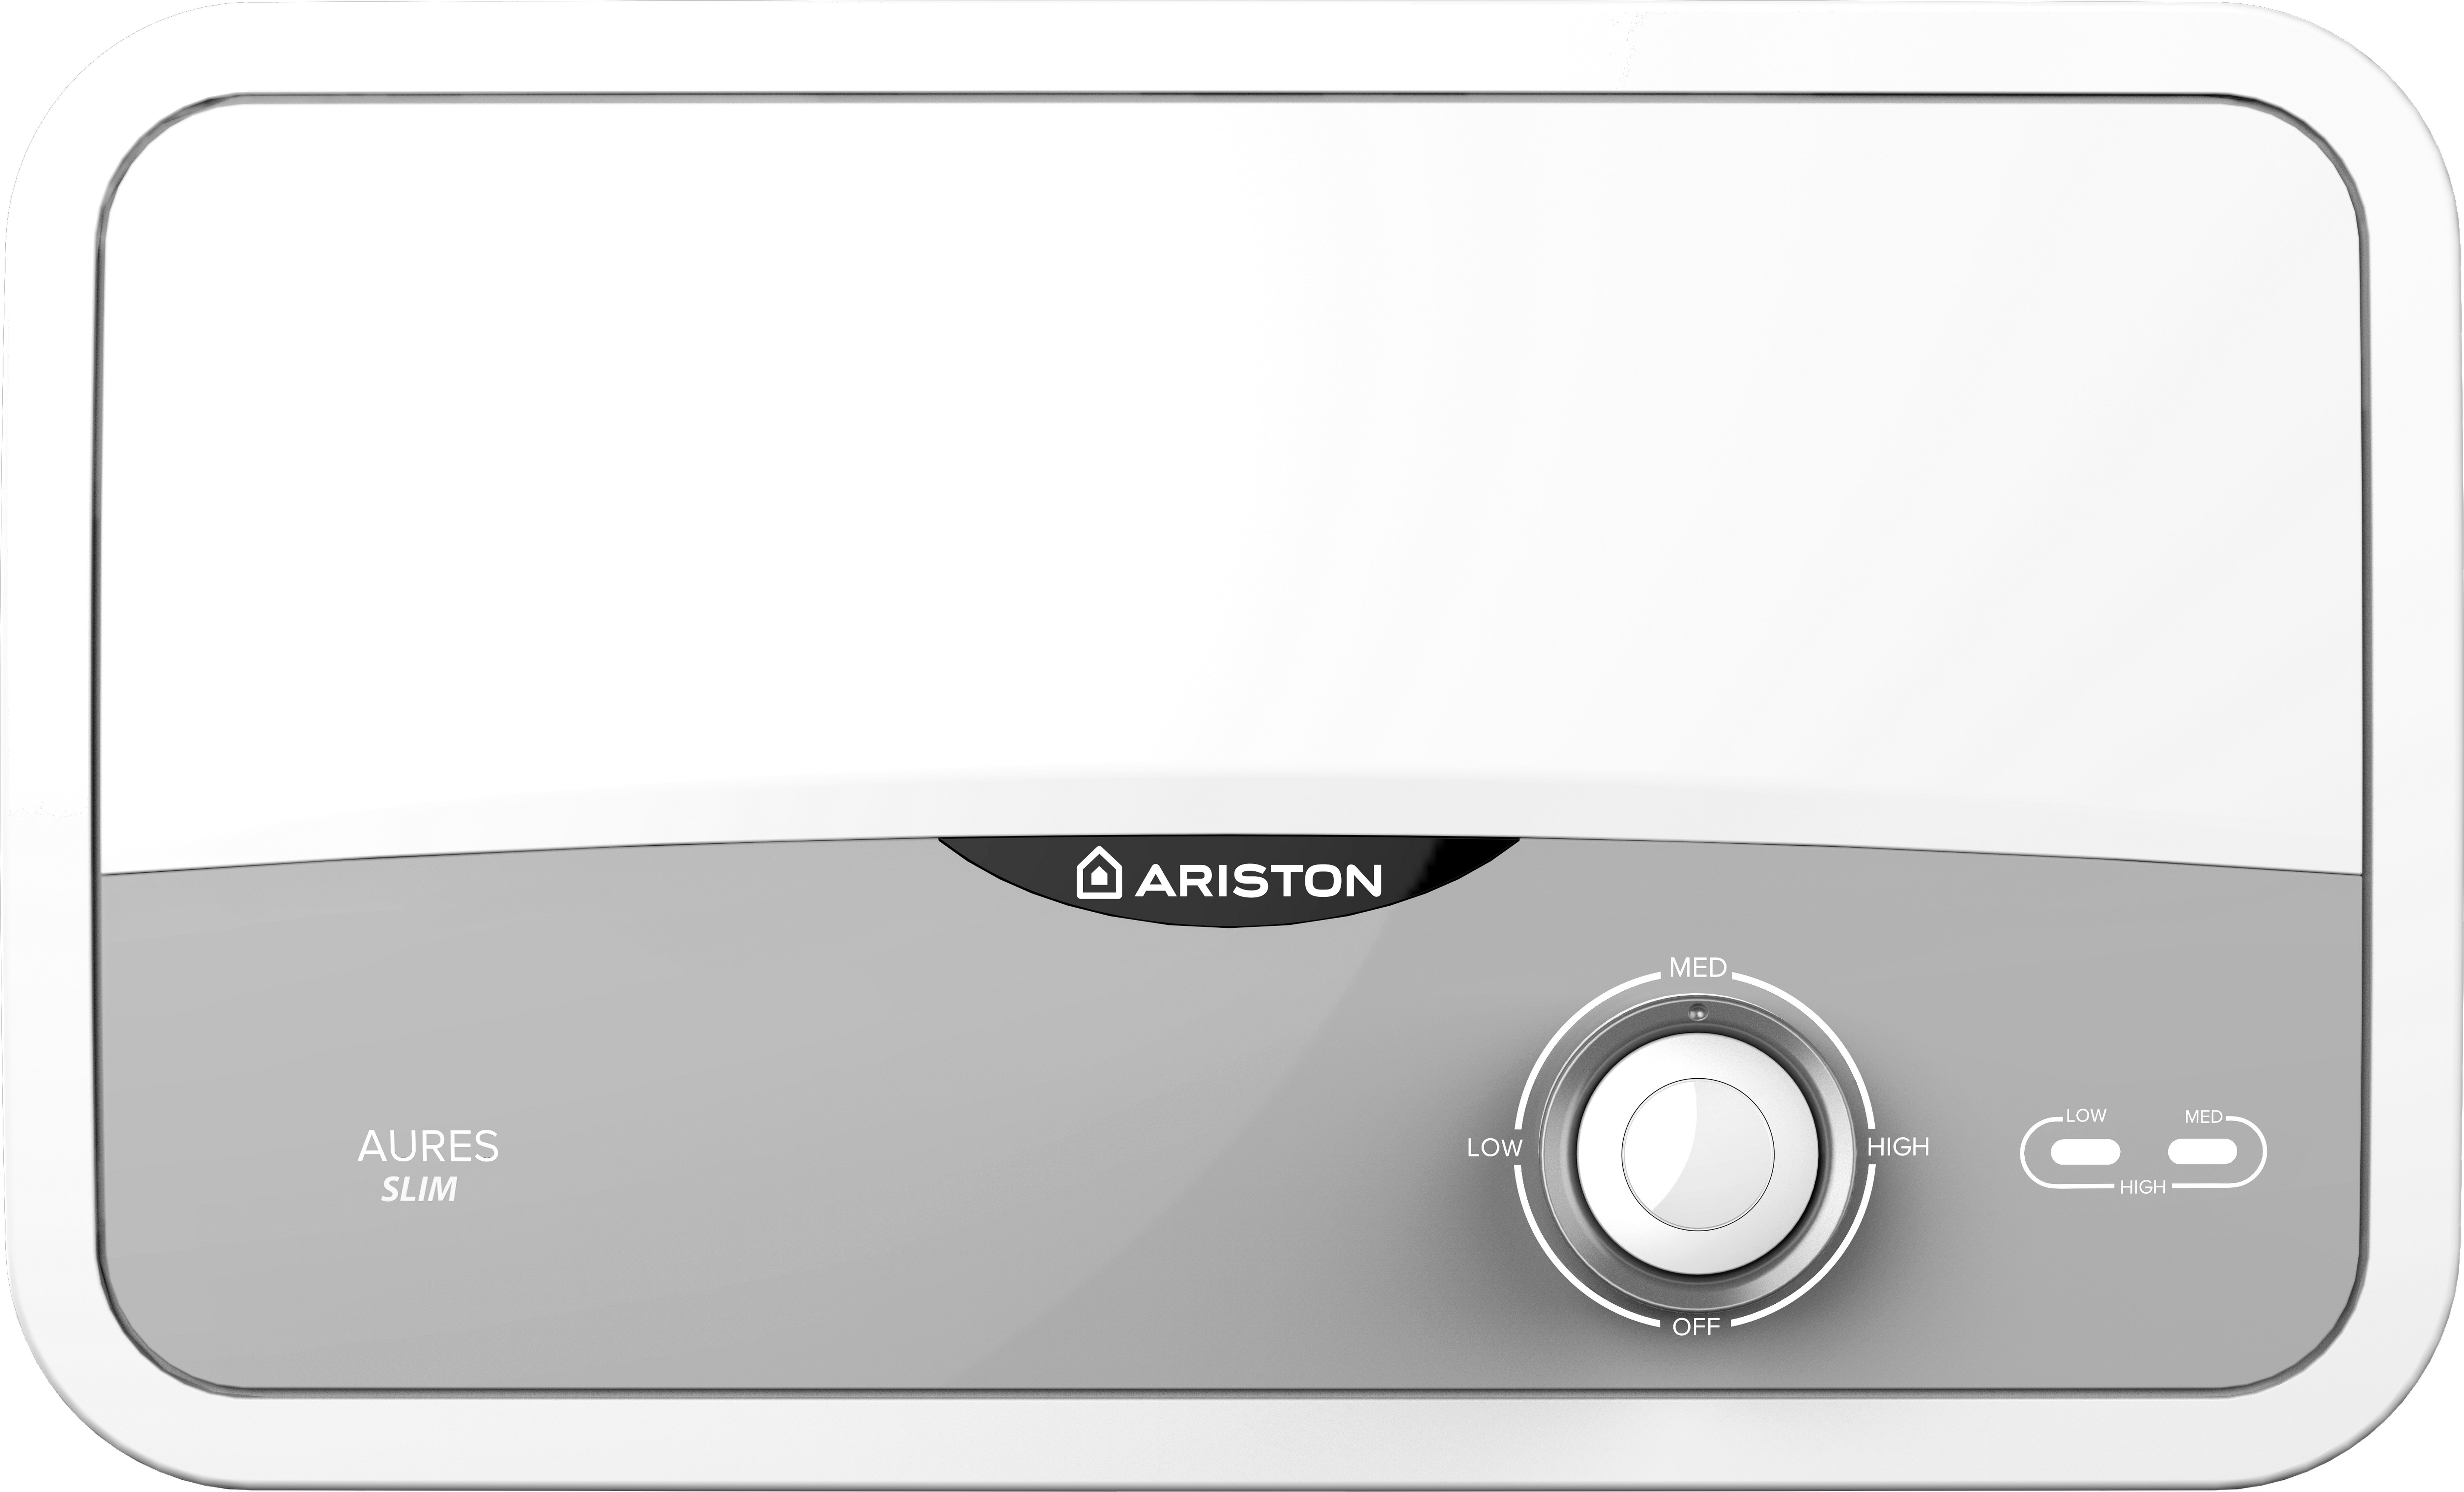 Отзывы проточный водонагреватель Ariston Aures S 3.5 COM PL